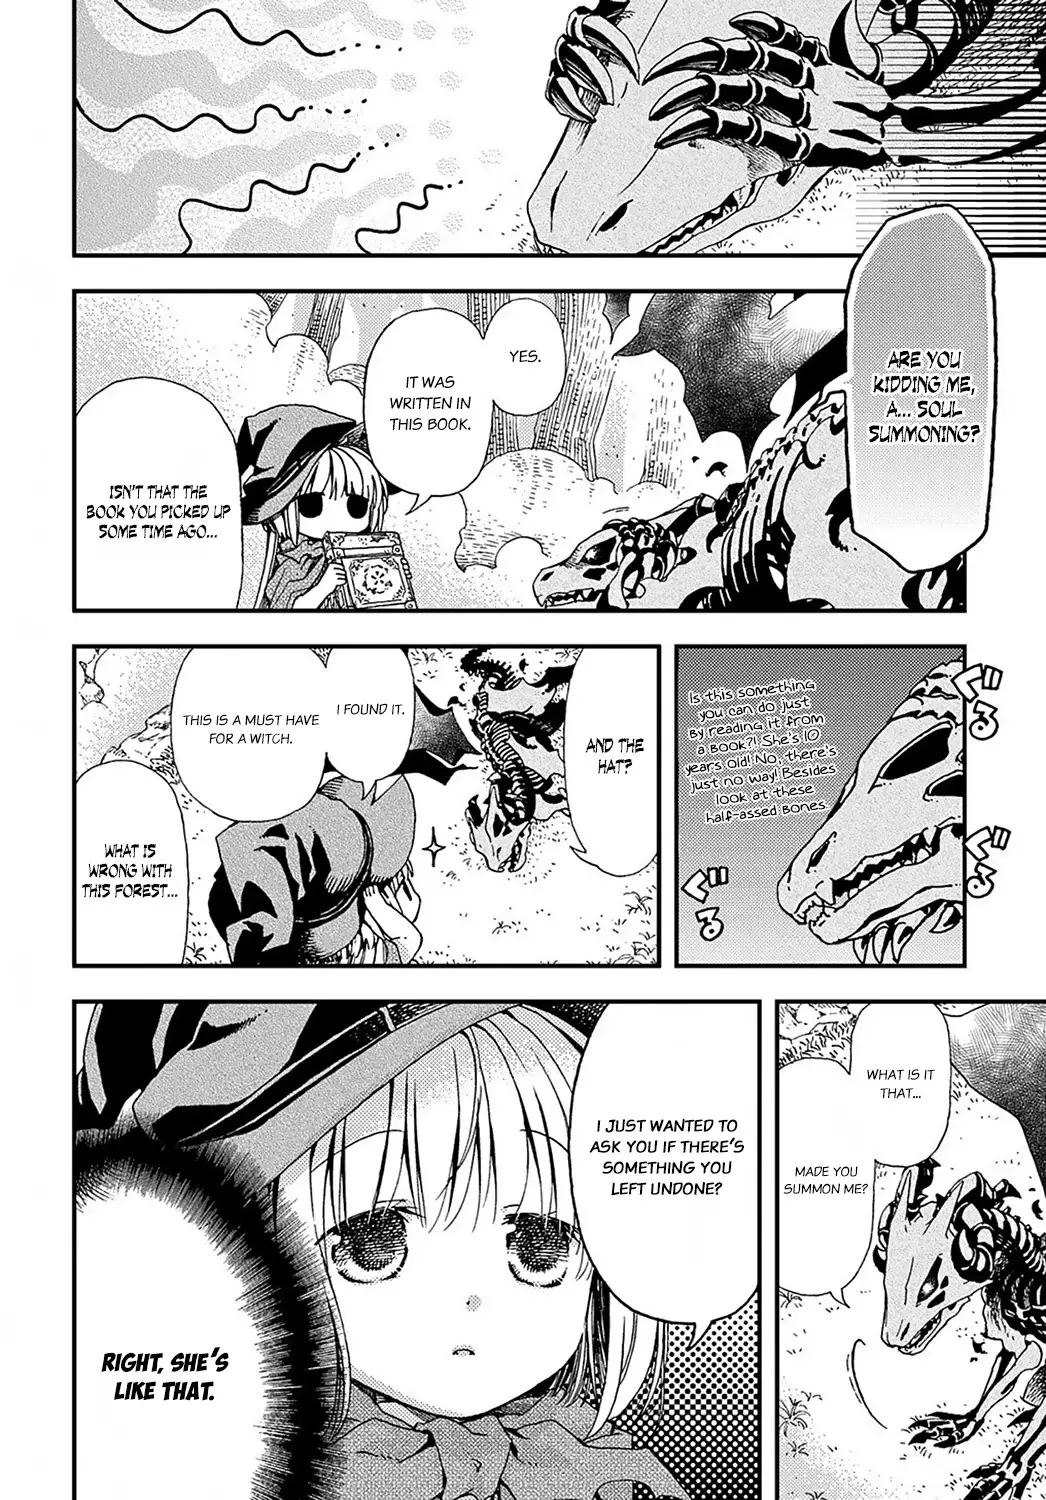 Hone Dragon No Mana Musume - 1 page 30